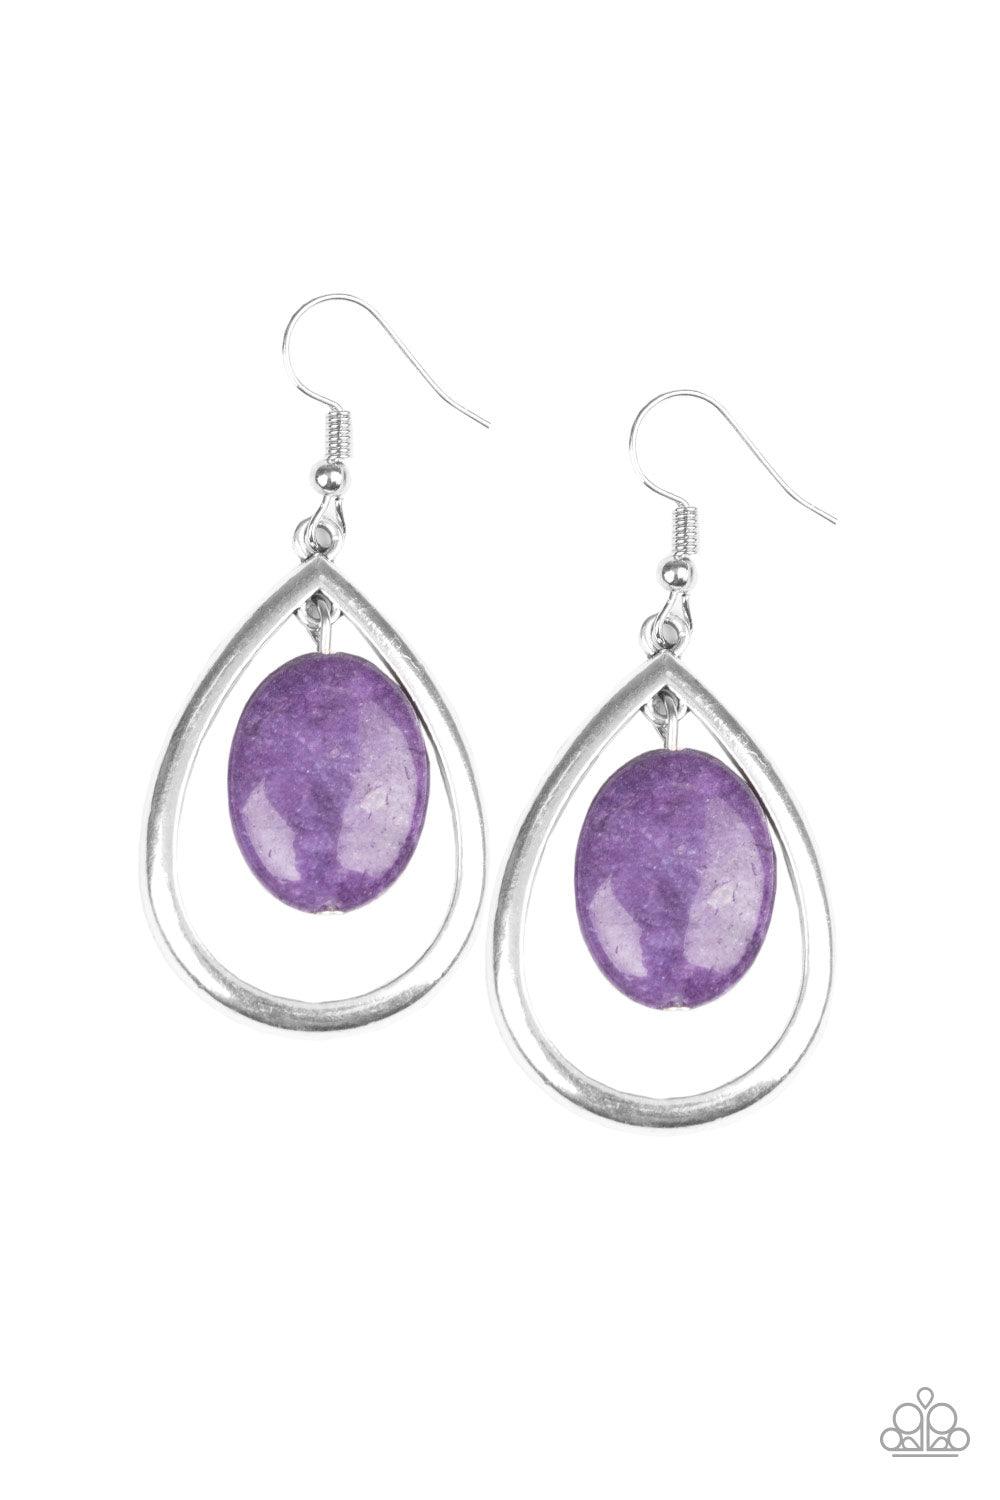 Purple Earrings - Earrings for Party - Poise of Purple Studs by Blingvine